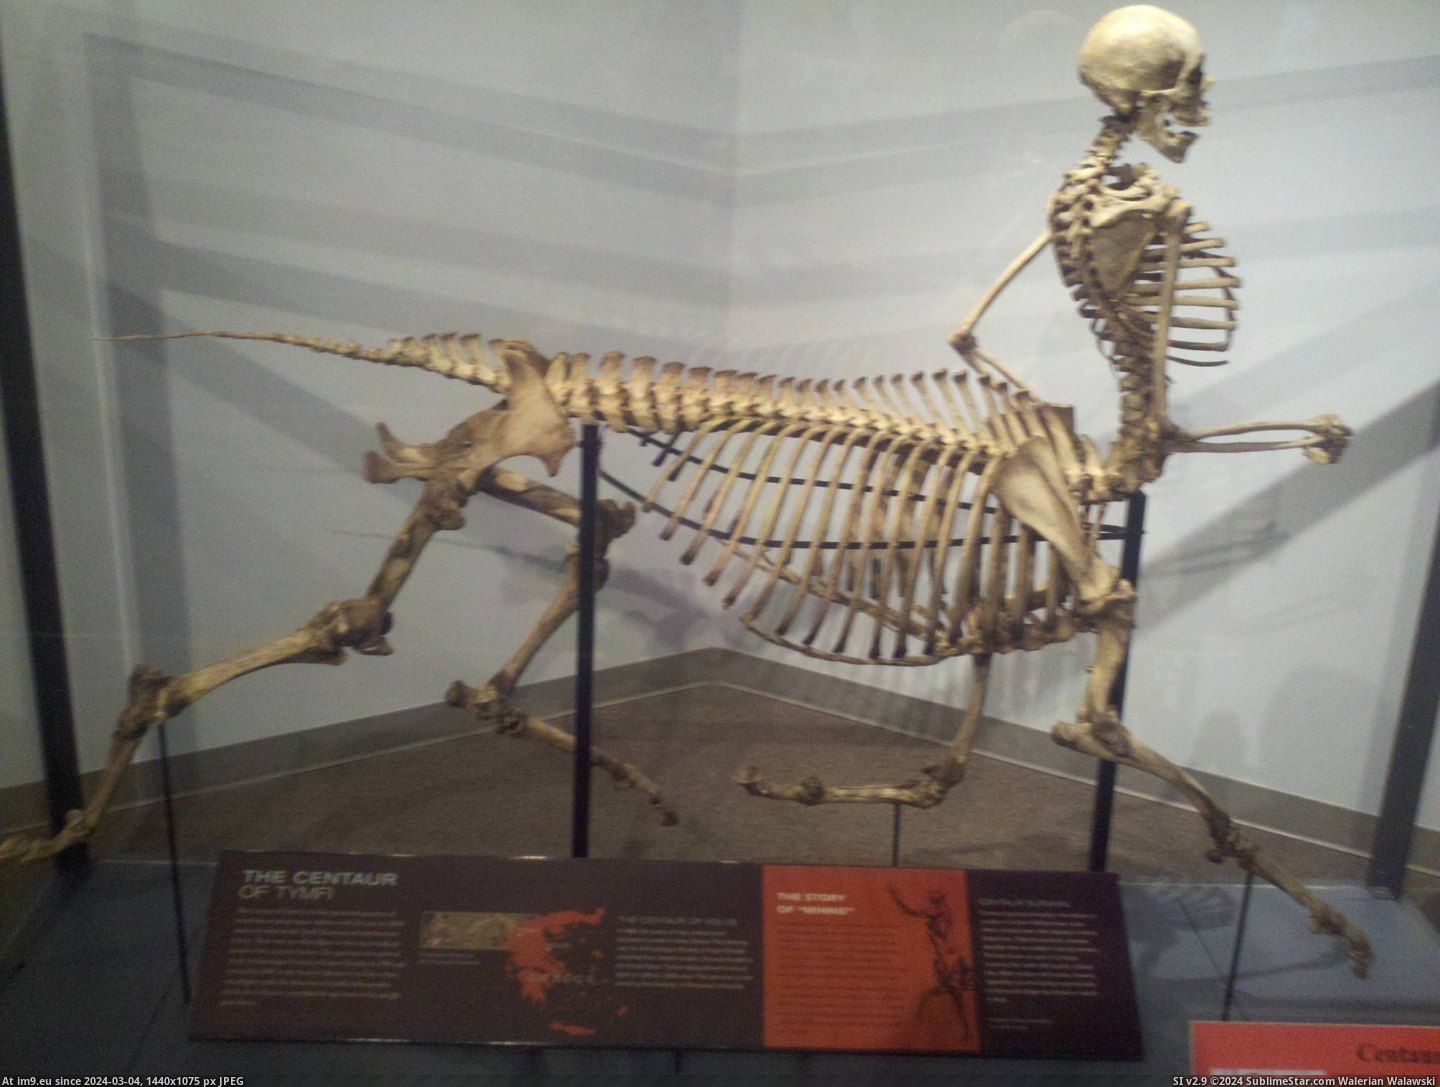 #Life #Museum #Skeleton #Centaur #Local #Wild [Pics] Centaur skeleton at my local wild life museum. Pic. (Image of album My r/PICS favs))